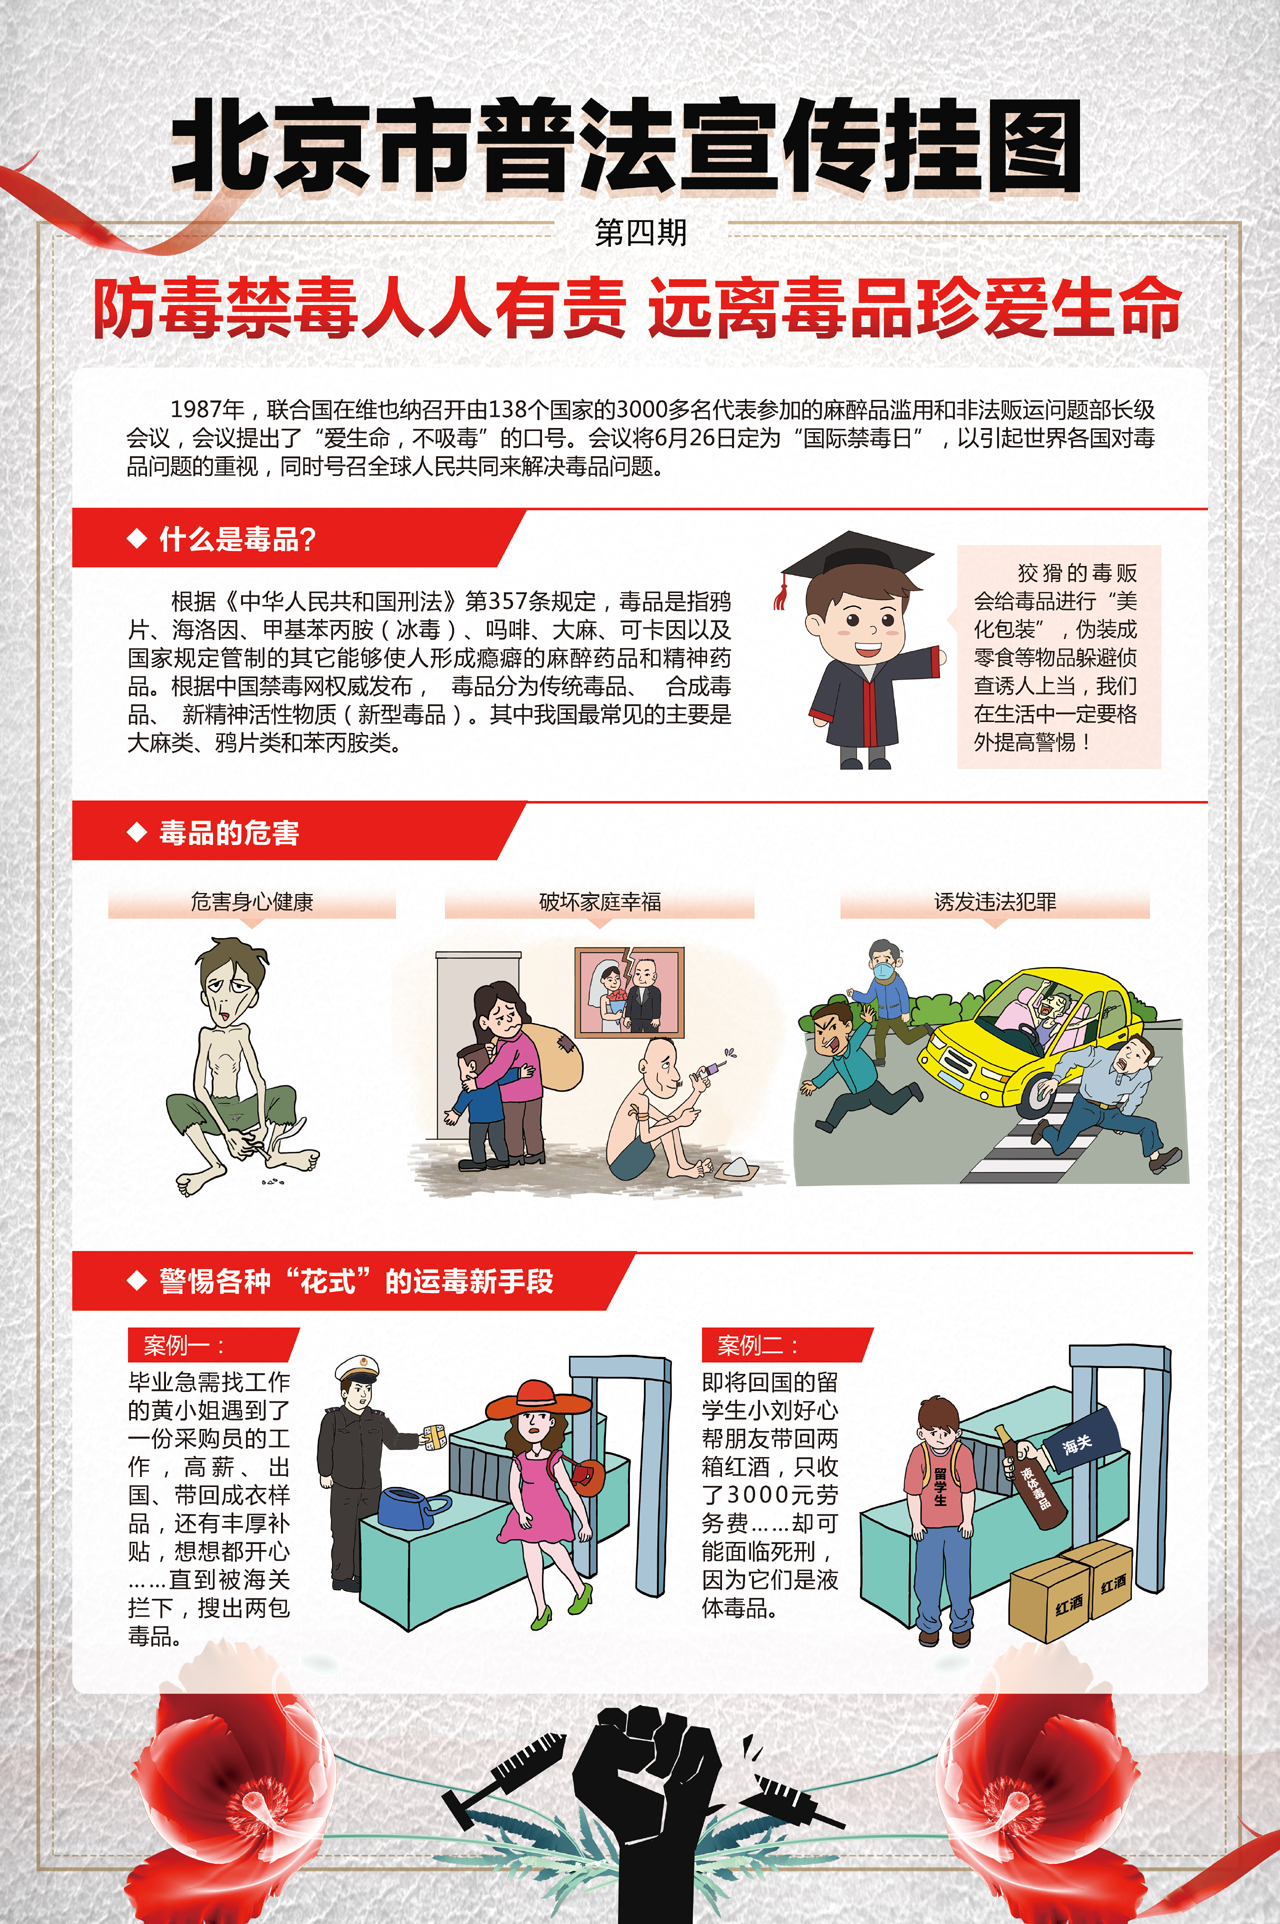 北京市普法宣传挂图第四期-1